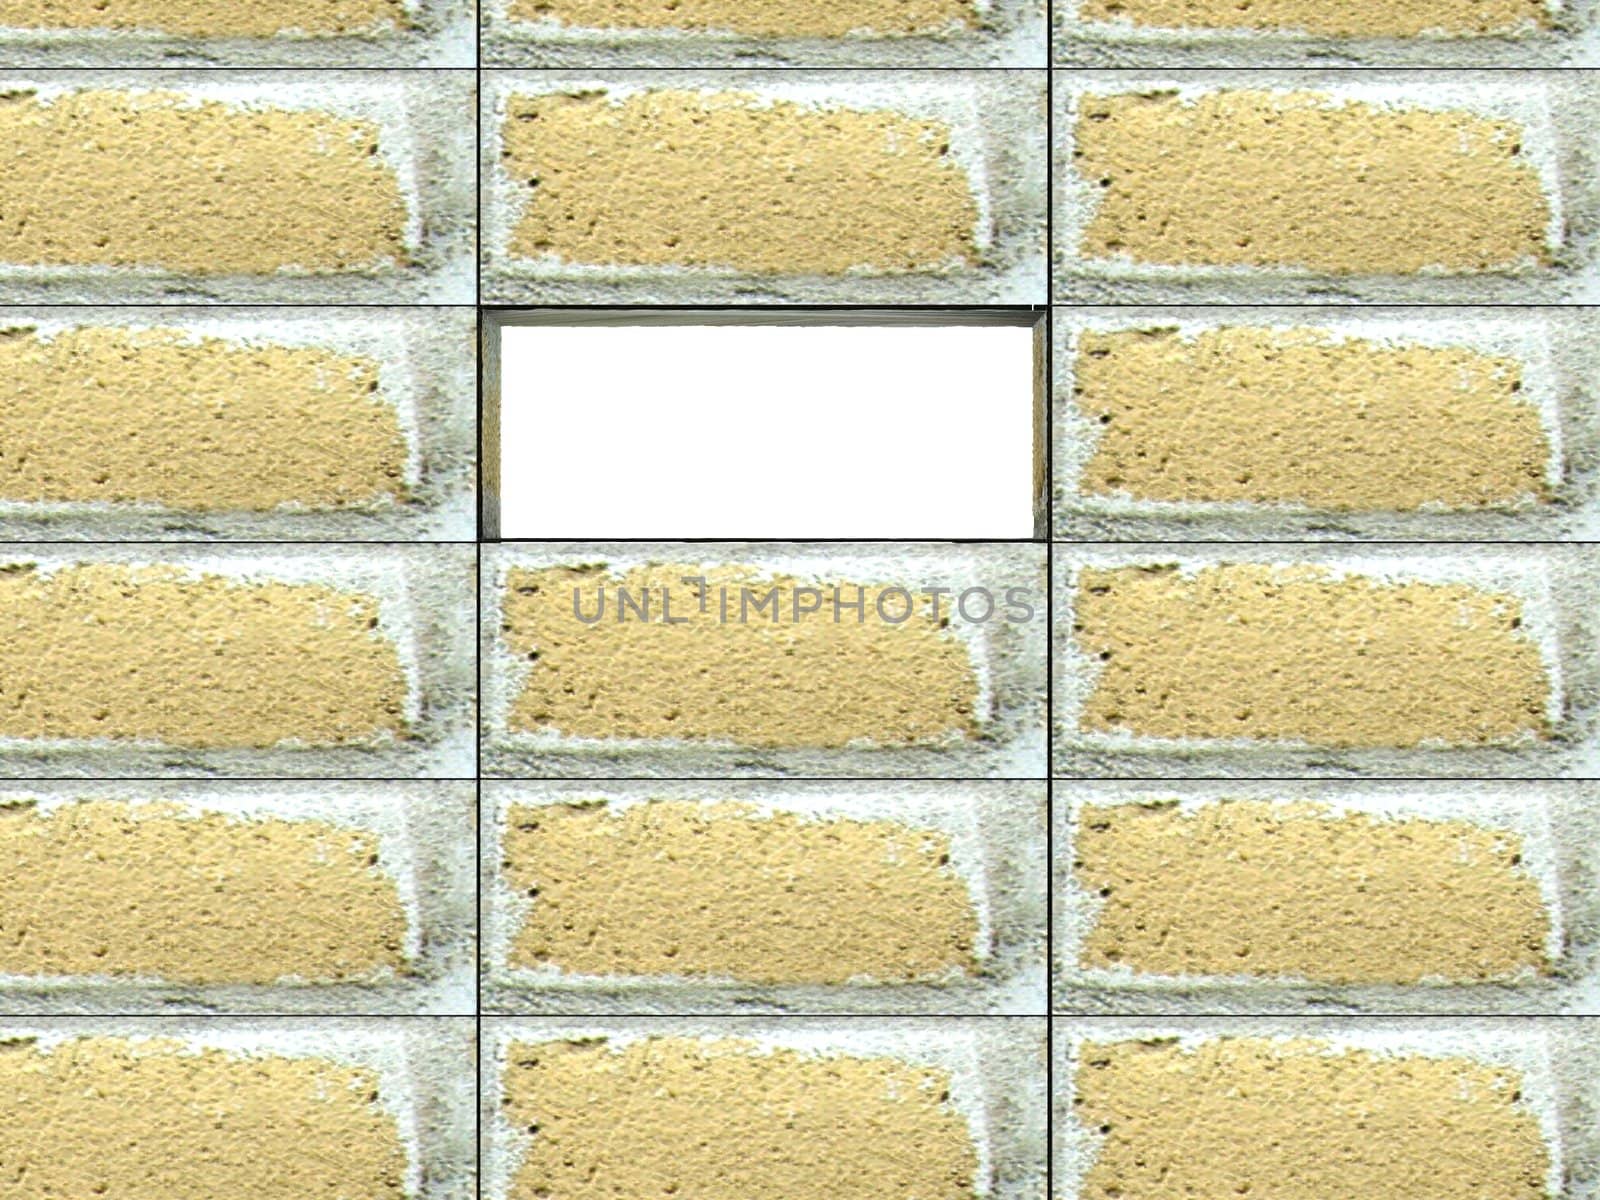 bricks by imagerymajestic